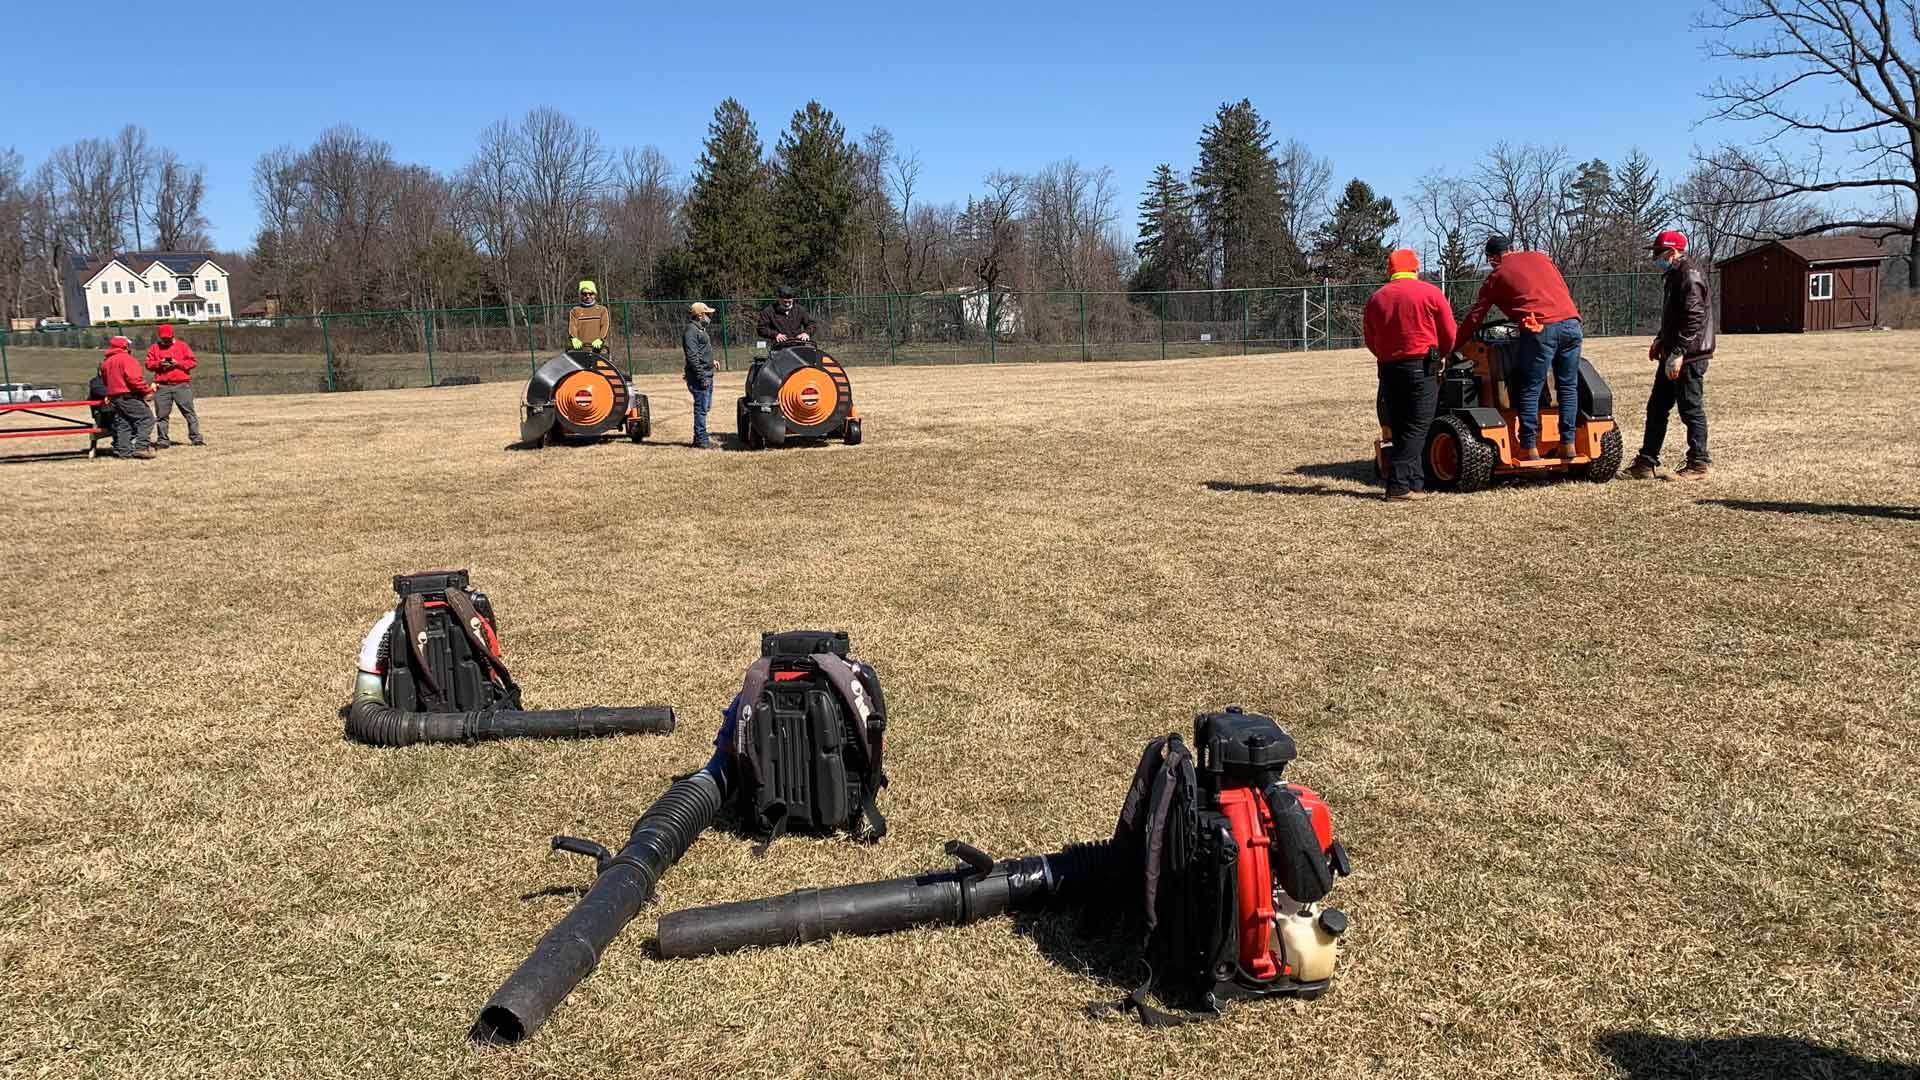 Professional training in a field in Allendale, NJ.